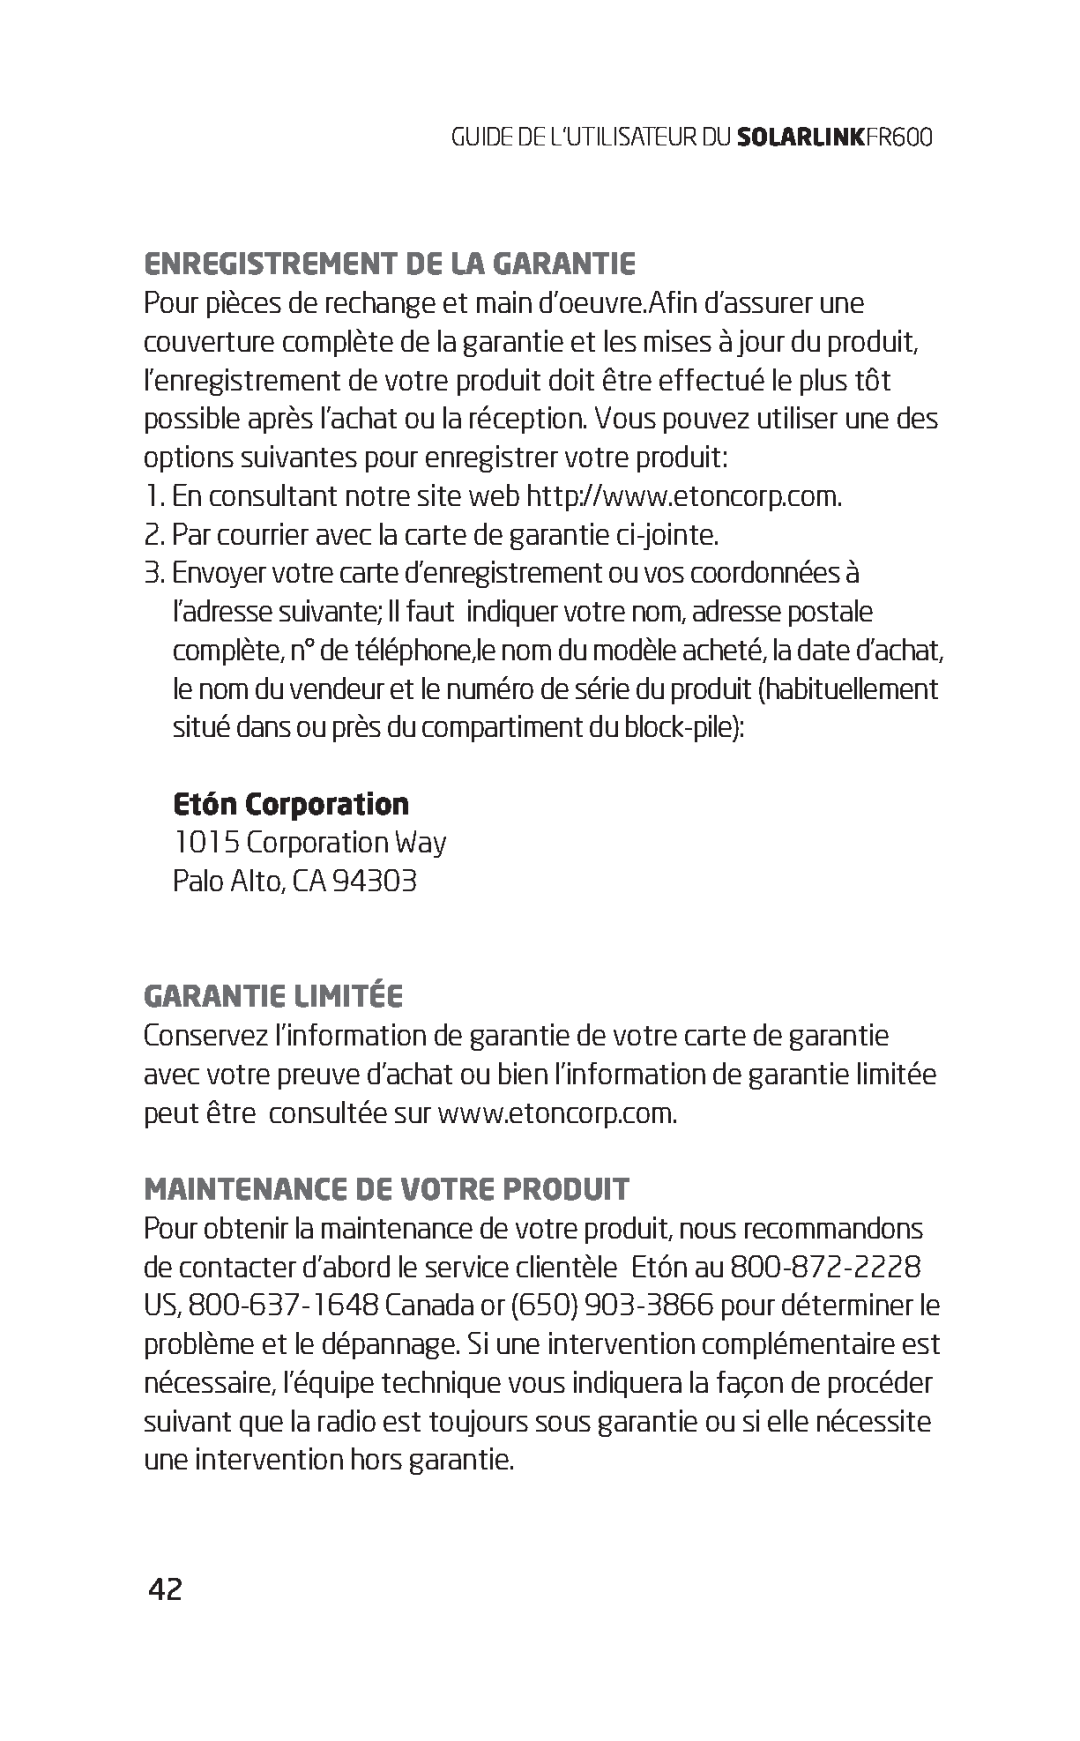 Eton FR600 owner manual Enregistrement De La Garantie, Garantie Limitée, Maintenance De Votre Produit, Etón Corporation 